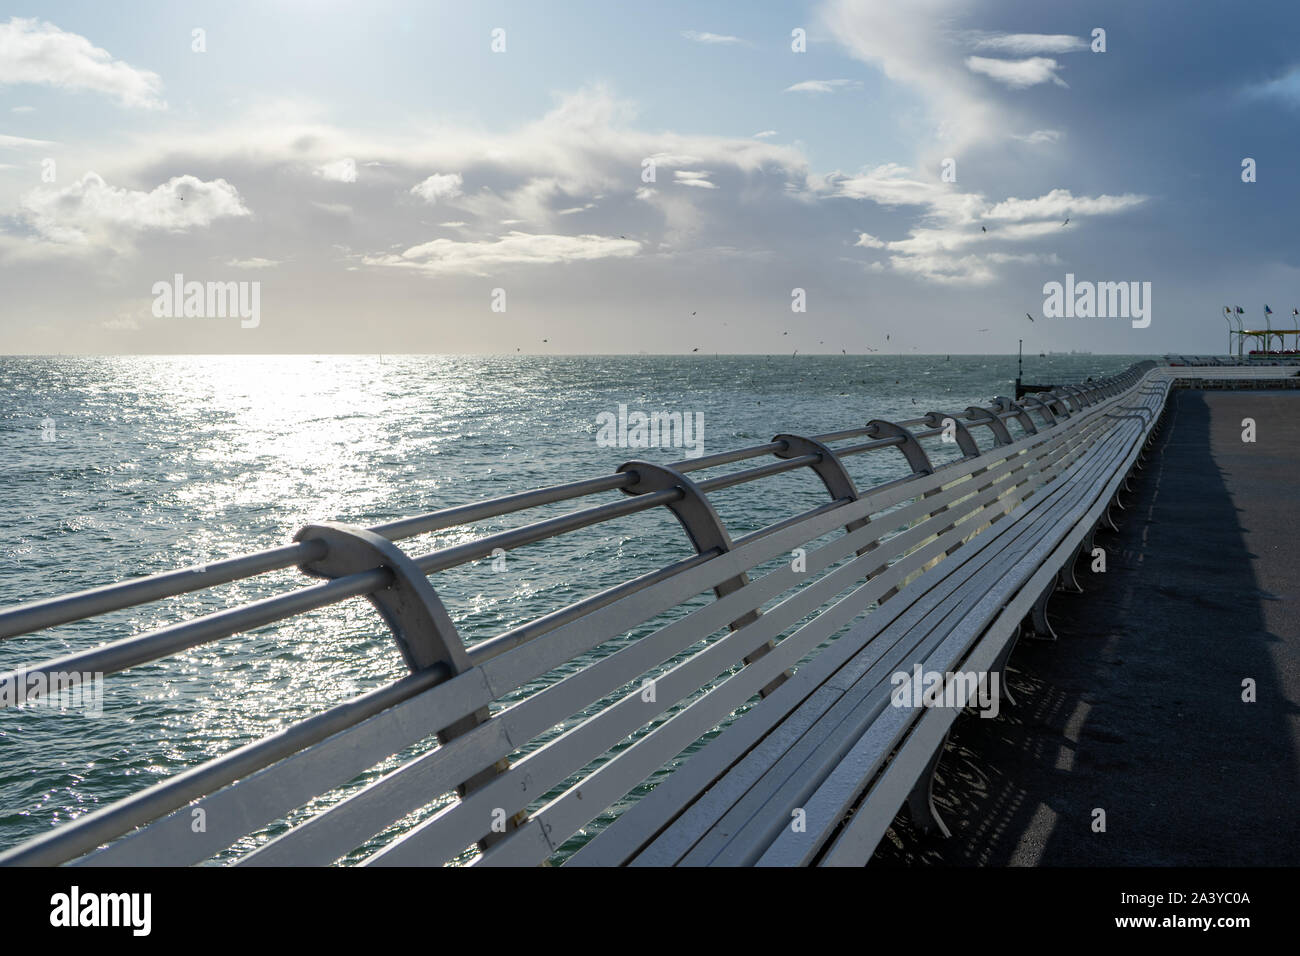 Bancos de madera blanca bordeando un muelle costera británica Foto de stock